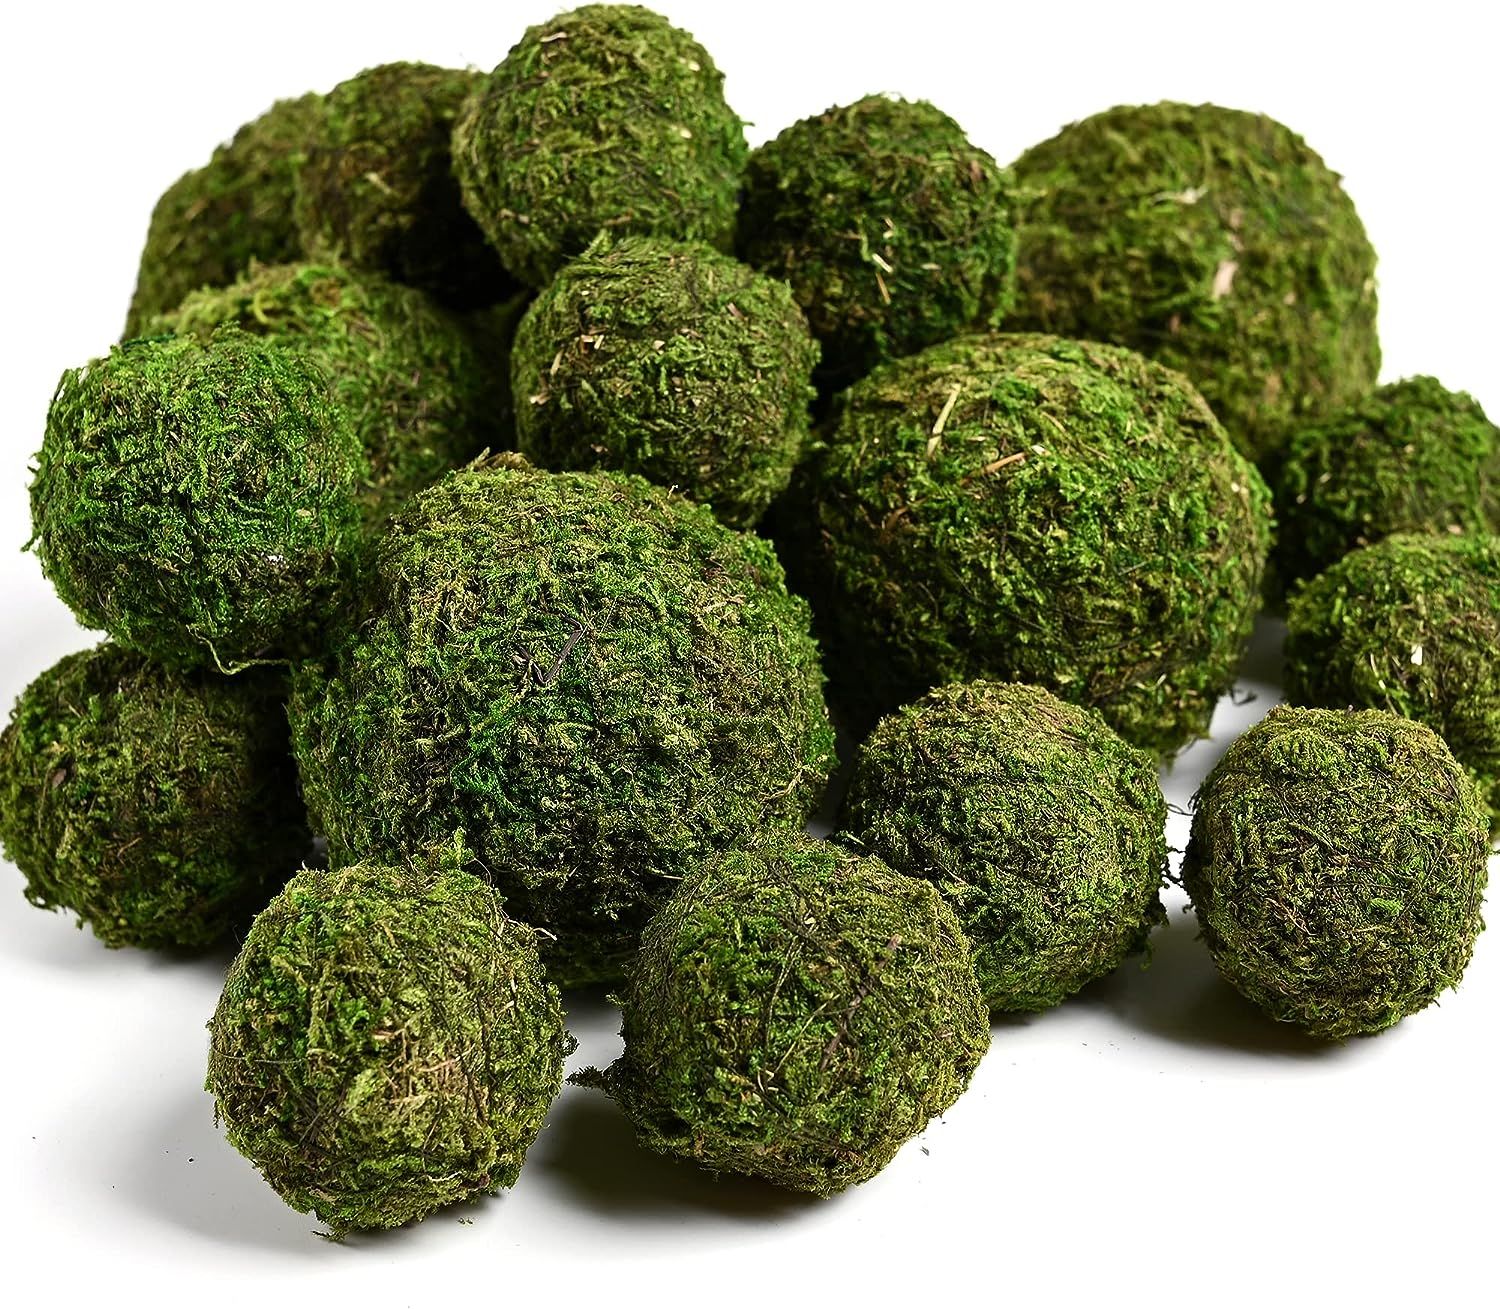 Usmola 18pcs Fake Moss Balls, 6pcs 3.2" Faux Green Balls + 12pcs 2" Artificial Moss Decorative Ba... | Amazon (US)